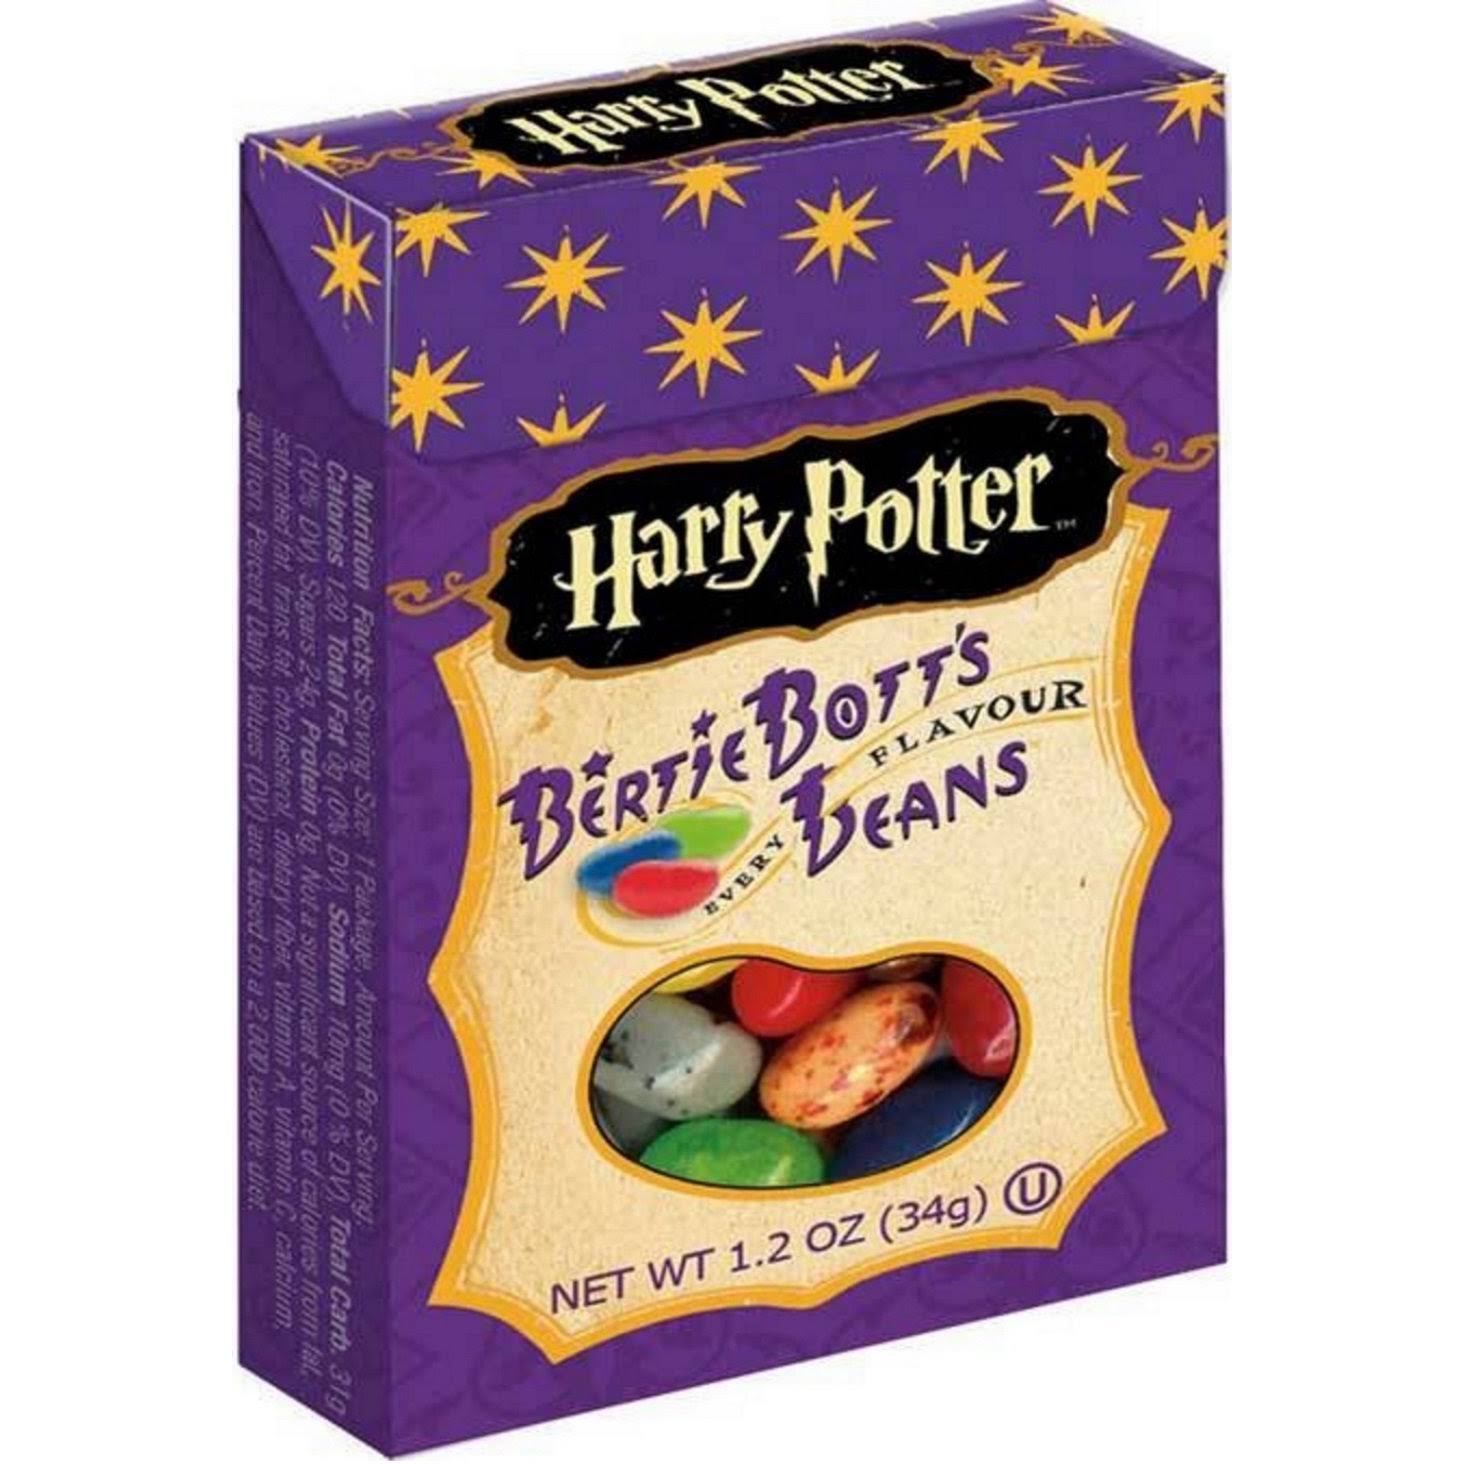 Harry Potter Bertie Botts Every Flavor Beans - 1.2oz